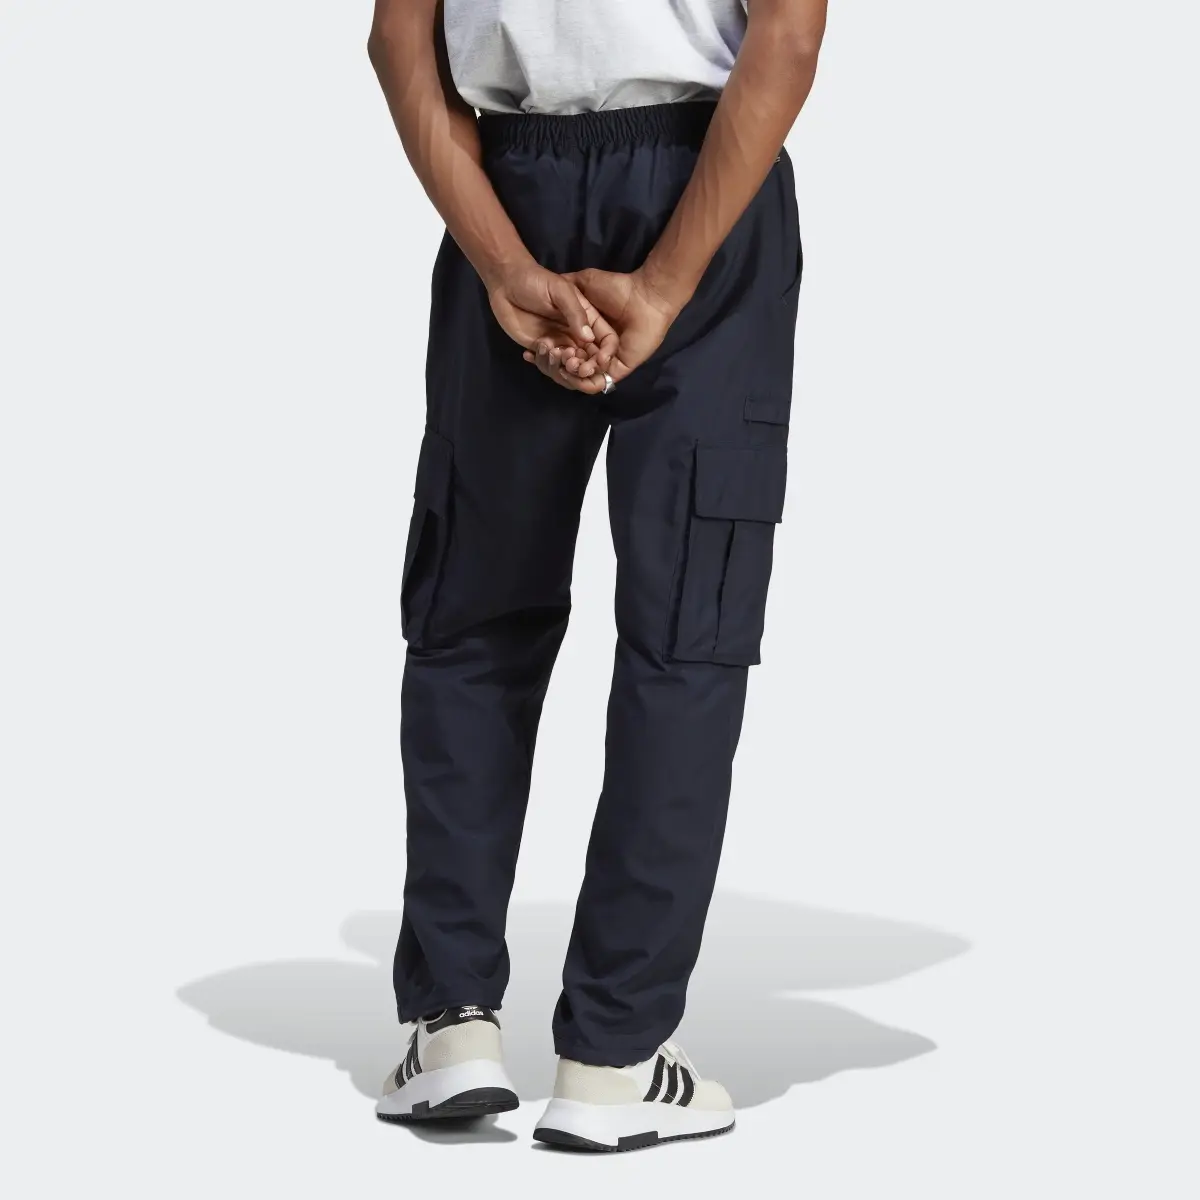 Adidas RIFTA City Boy Cargo Pants (Gender Neutral). 2